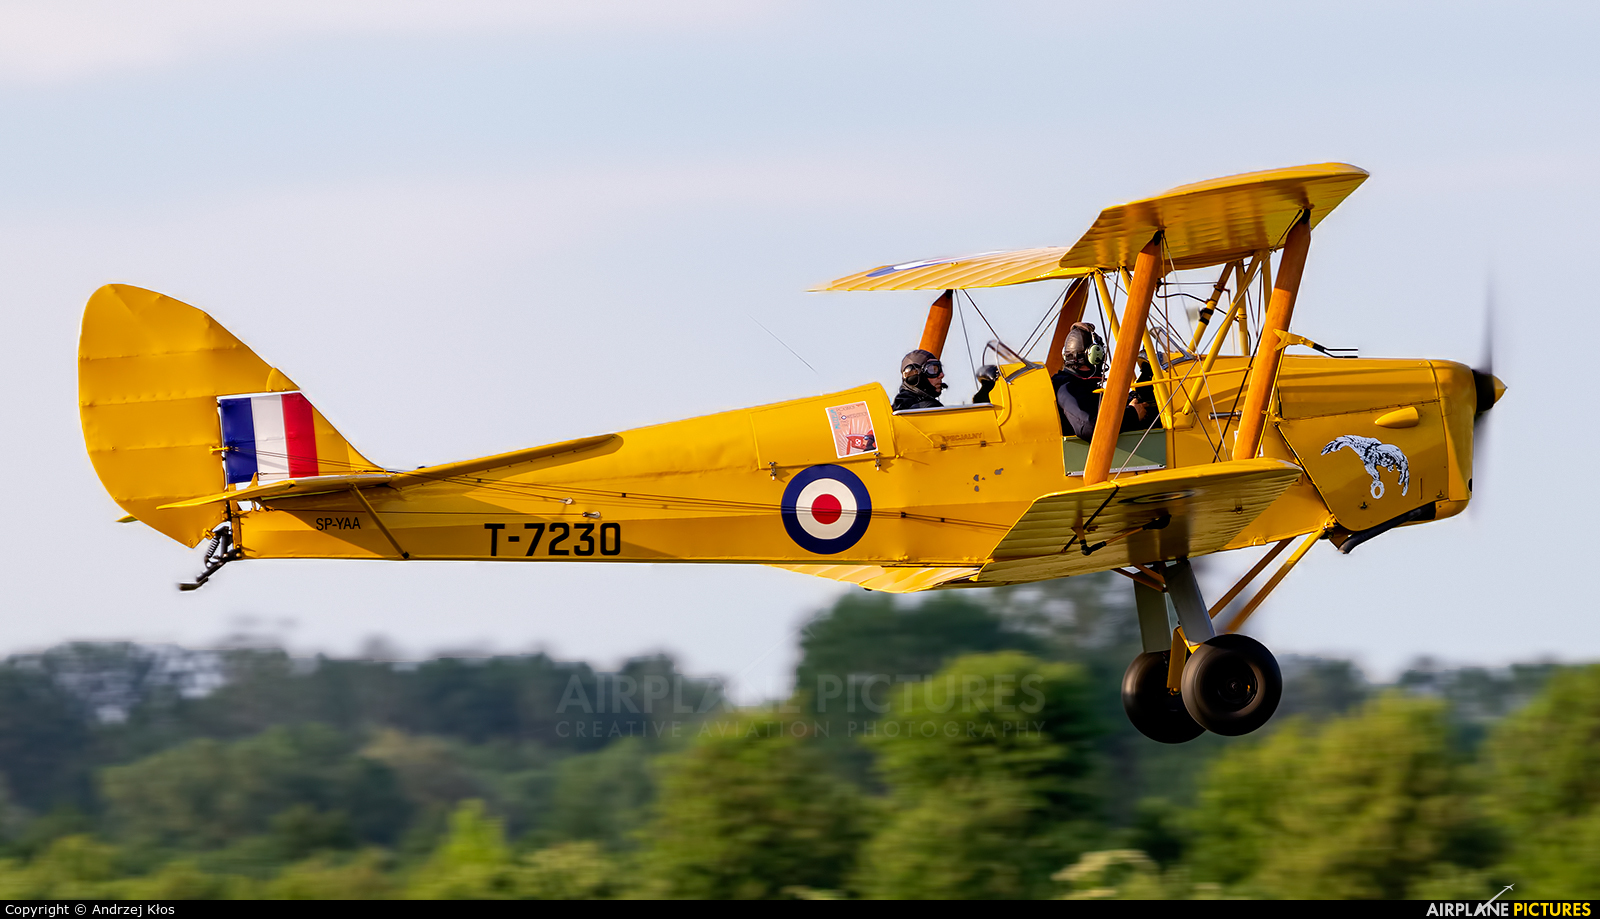 De Havilland Tiger Moth Wallpapers